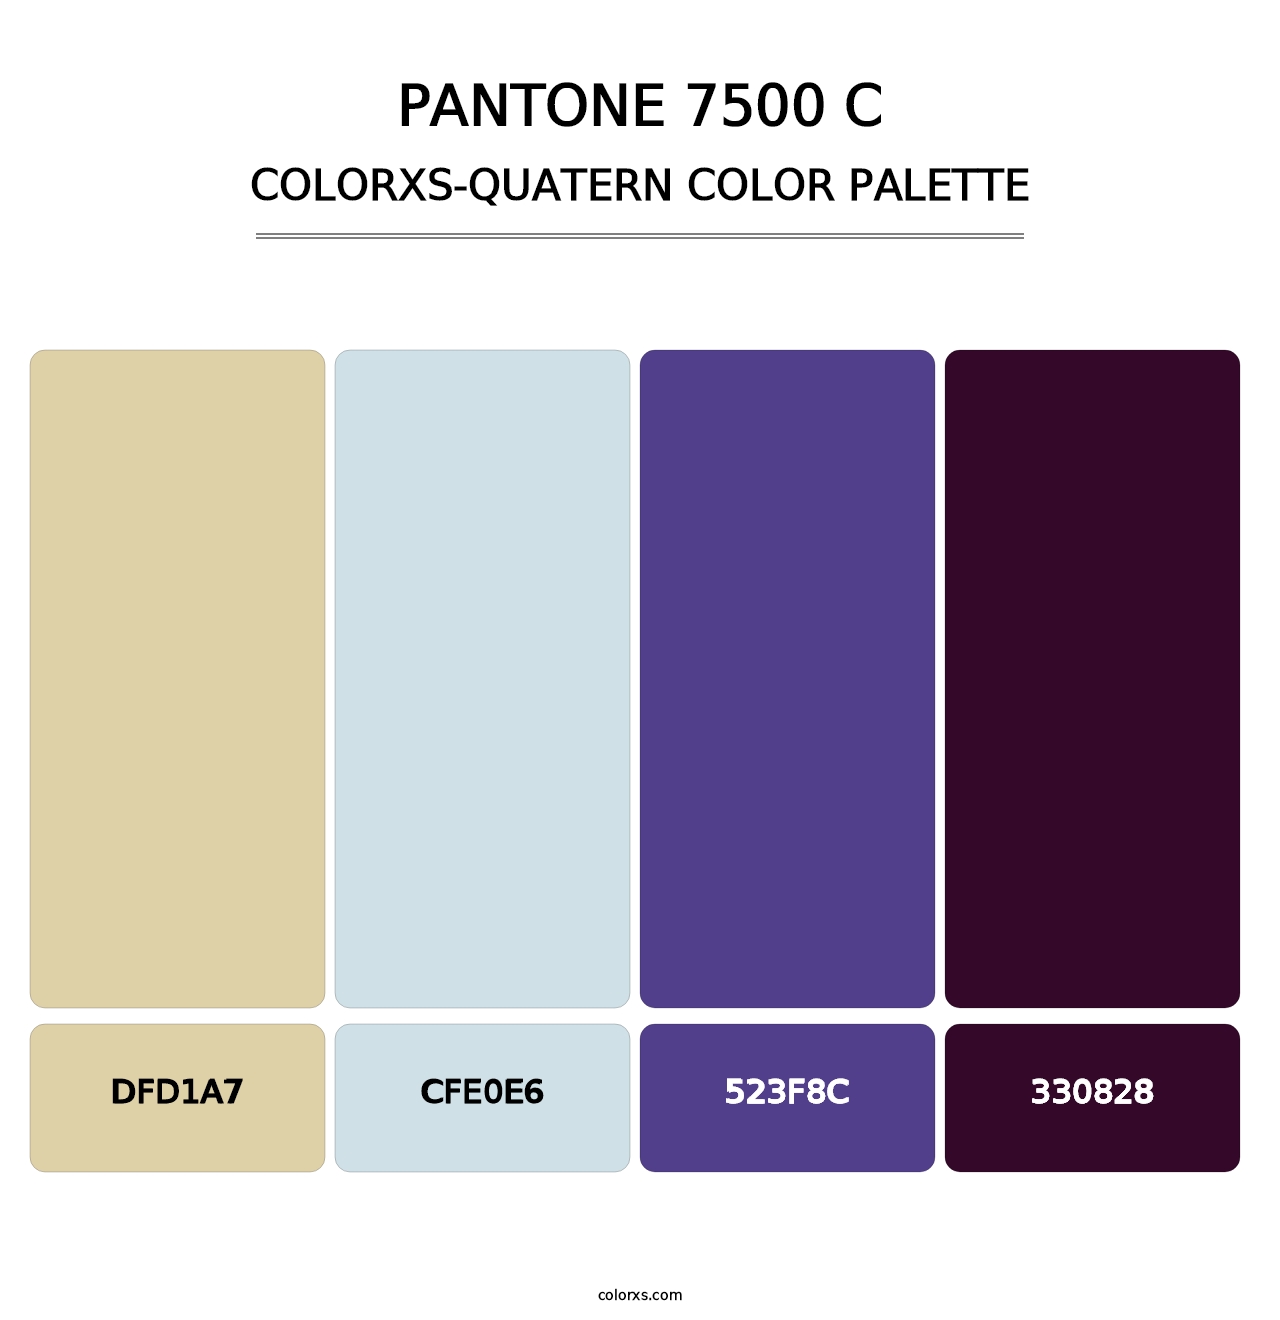 PANTONE 7500 C - Colorxs Quatern Palette